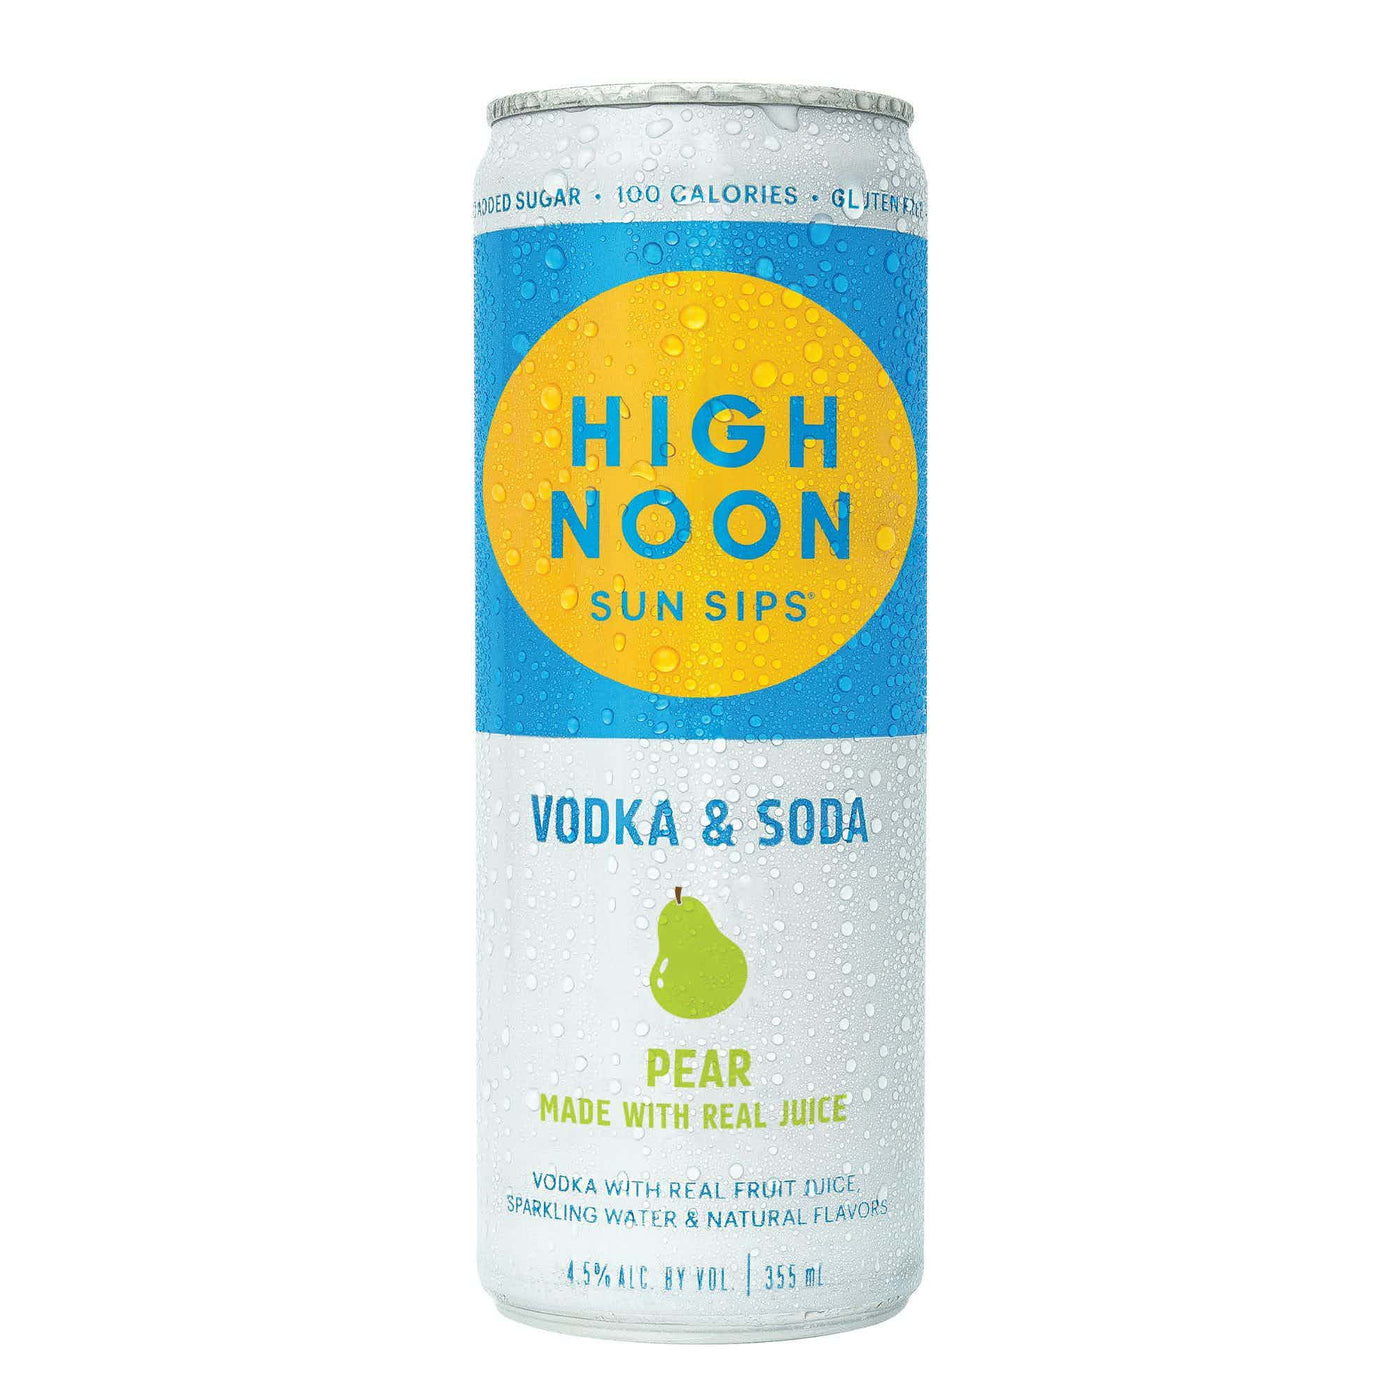 High Noon Sun Sips Vodka & Soda Pear